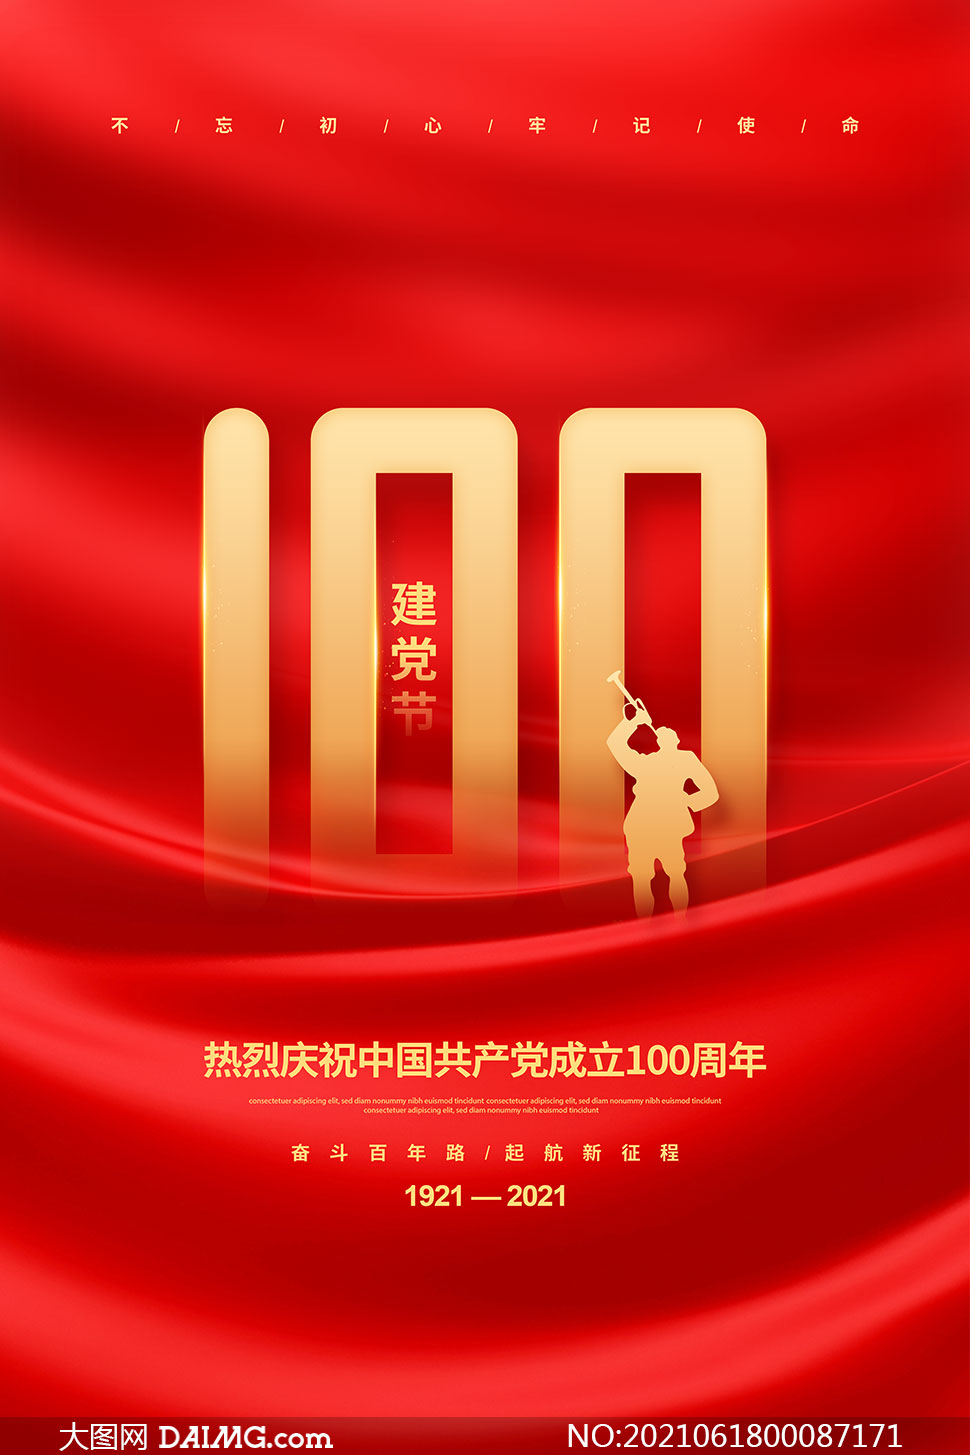 红色大气建党100周年宣传海报psd素材